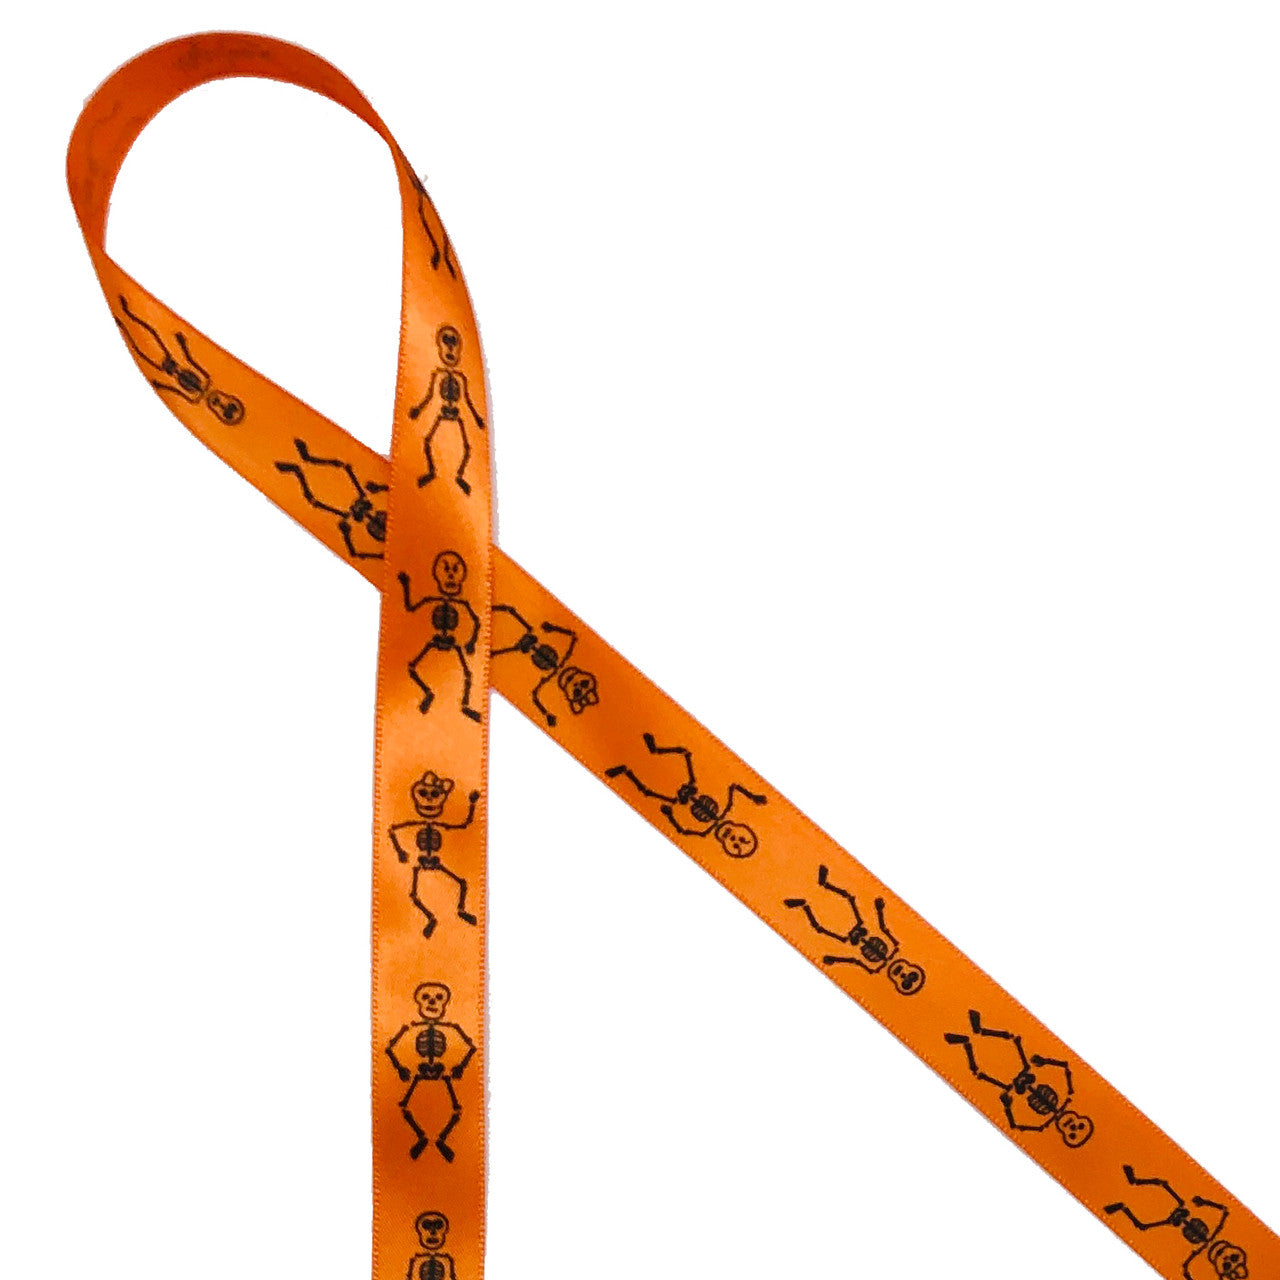 Skeleton ribbon featuring dancing skeleton bones printed on 5/8" orange single face satin